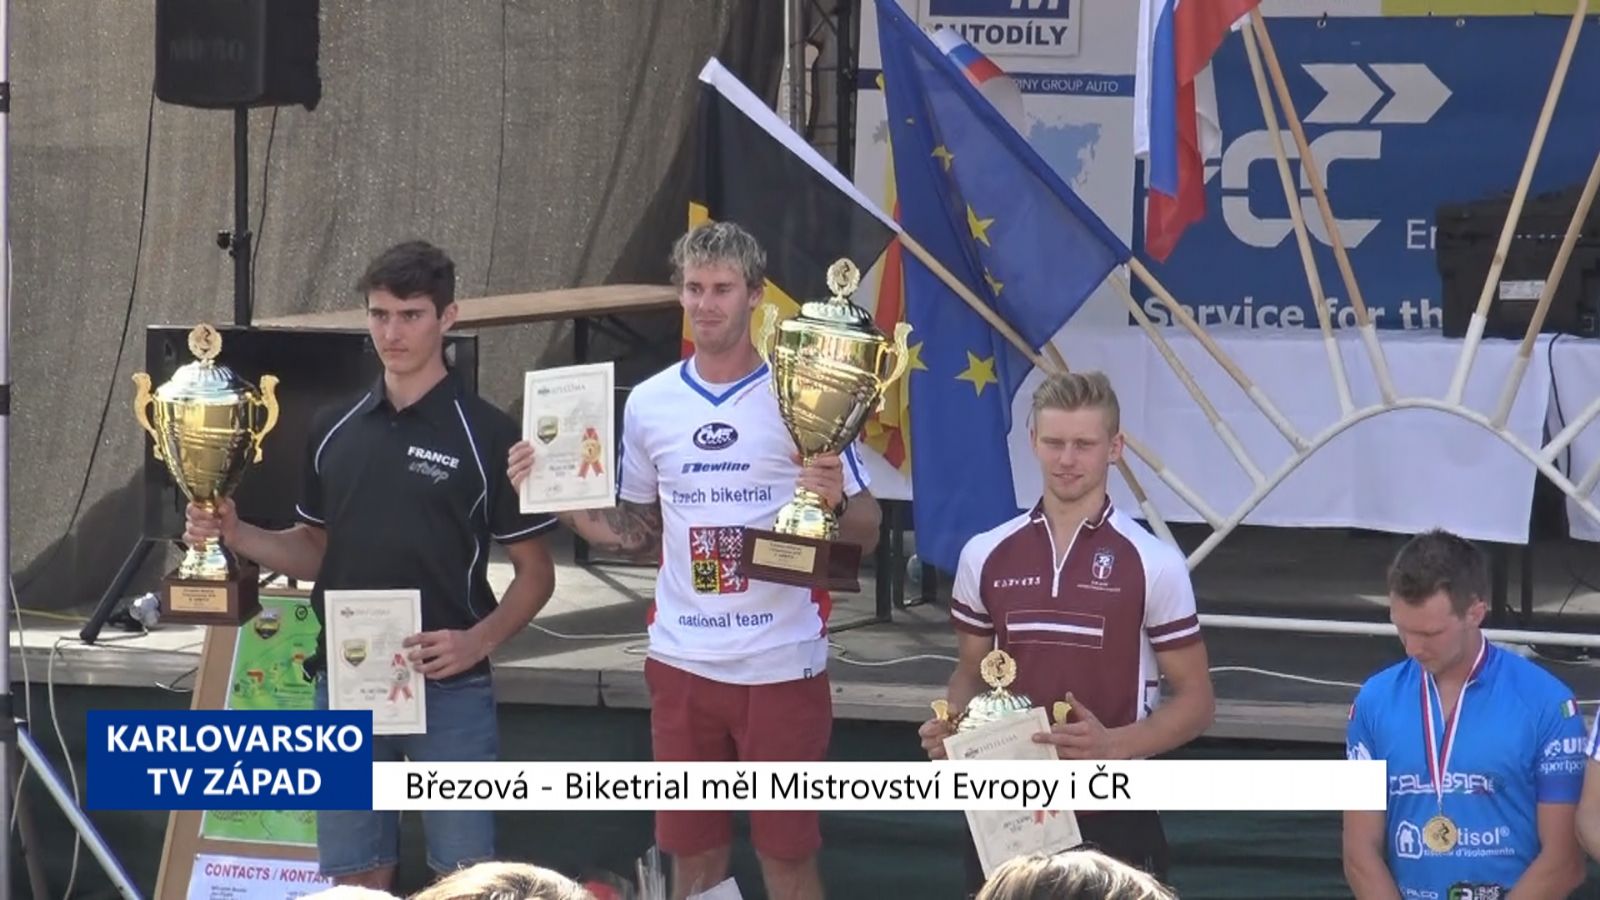 Březová: Biketrial měl Mistrovství Evropy i ČR (TV Západ)